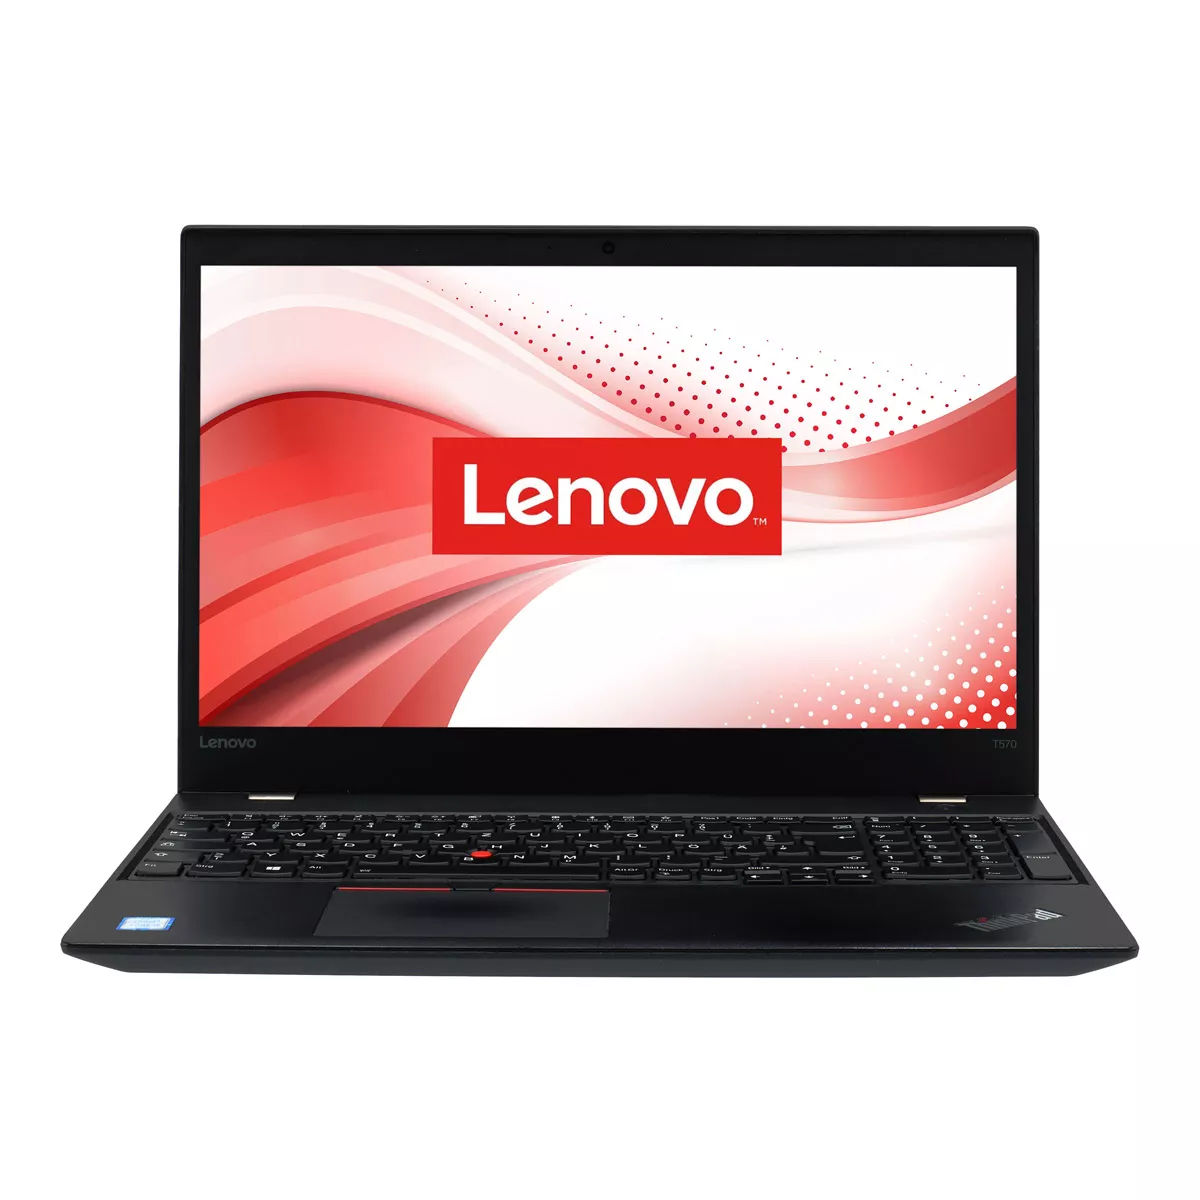 Lenovo ThinkPad T570 Core i5 7300U Full-HD 240 GB M.2 nVME SSD Webcam B